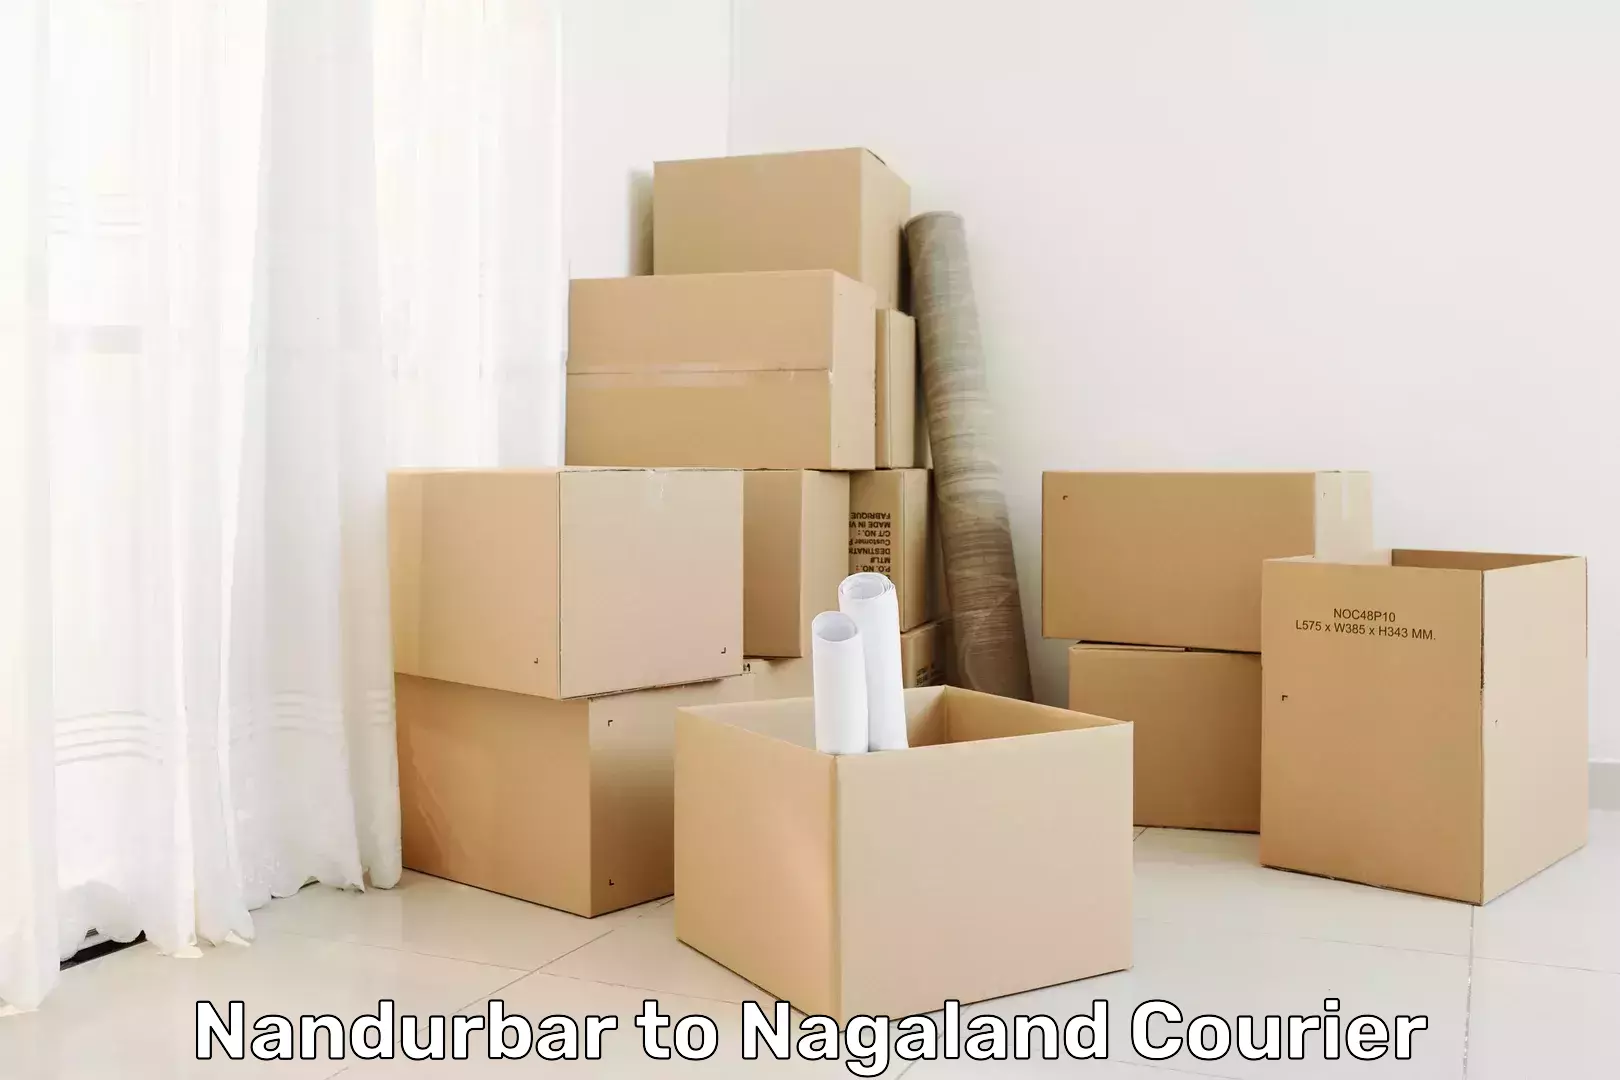 Subscription-based courier Nandurbar to Nagaland